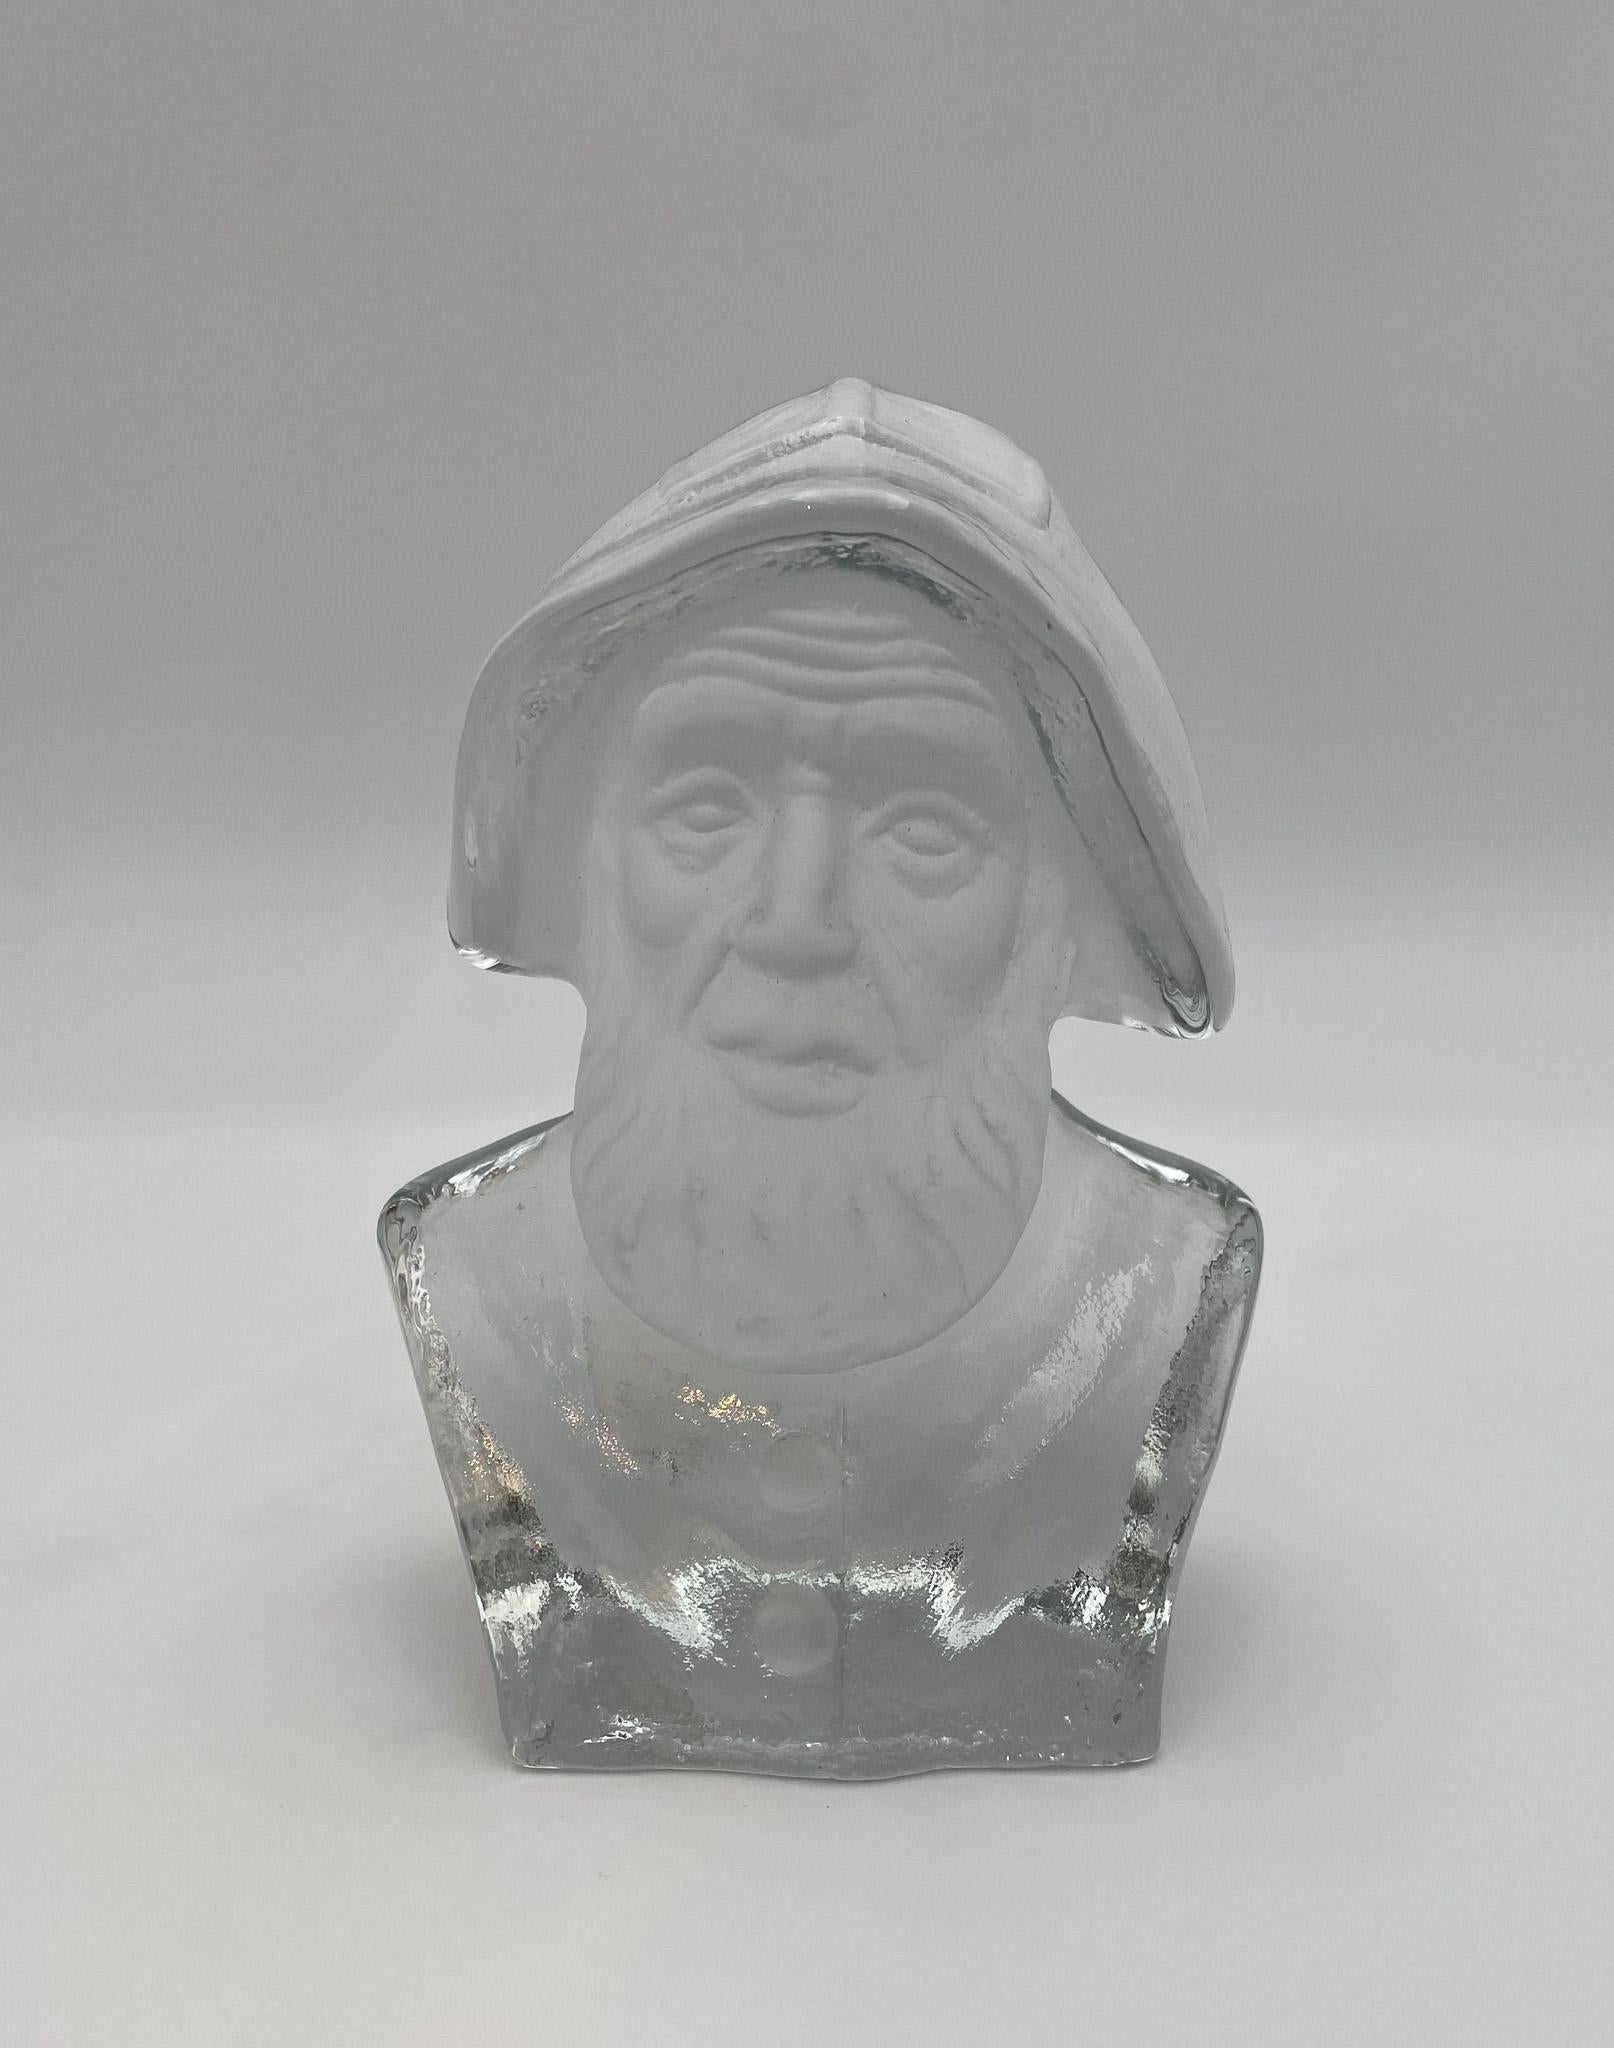 Sculpture de buste de pêcheur Viking en verre, presse-papiers ou serre-livres  États-Unis, 20e siècle.  Conserve l'étiquette d'origine de Viking Glass au dos.  